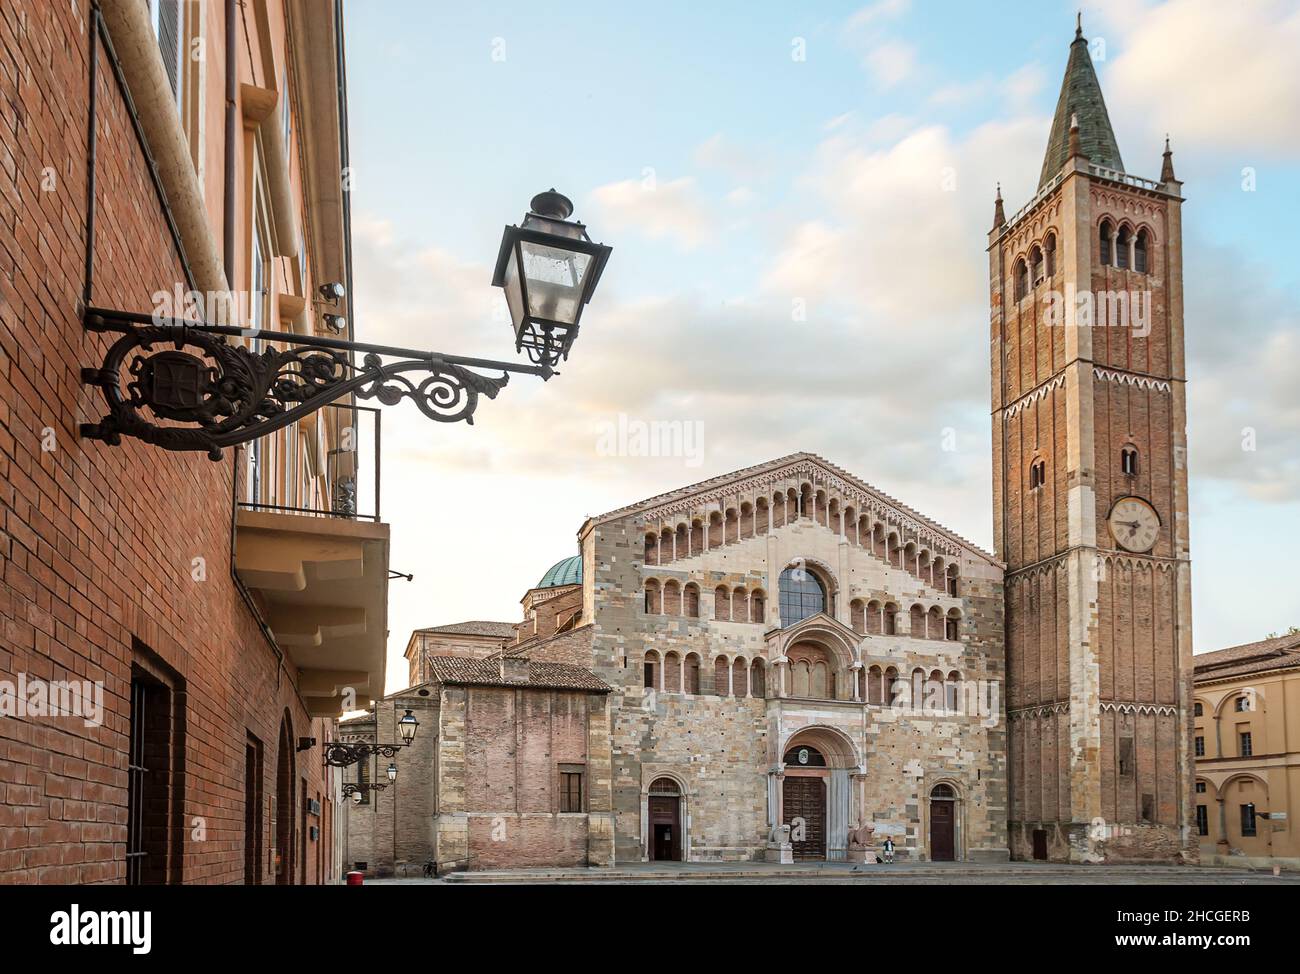 Piazza Duomo en el centro histórico de Parma, Emilia-Romagna, Italia, al amanecer. Foto de stock